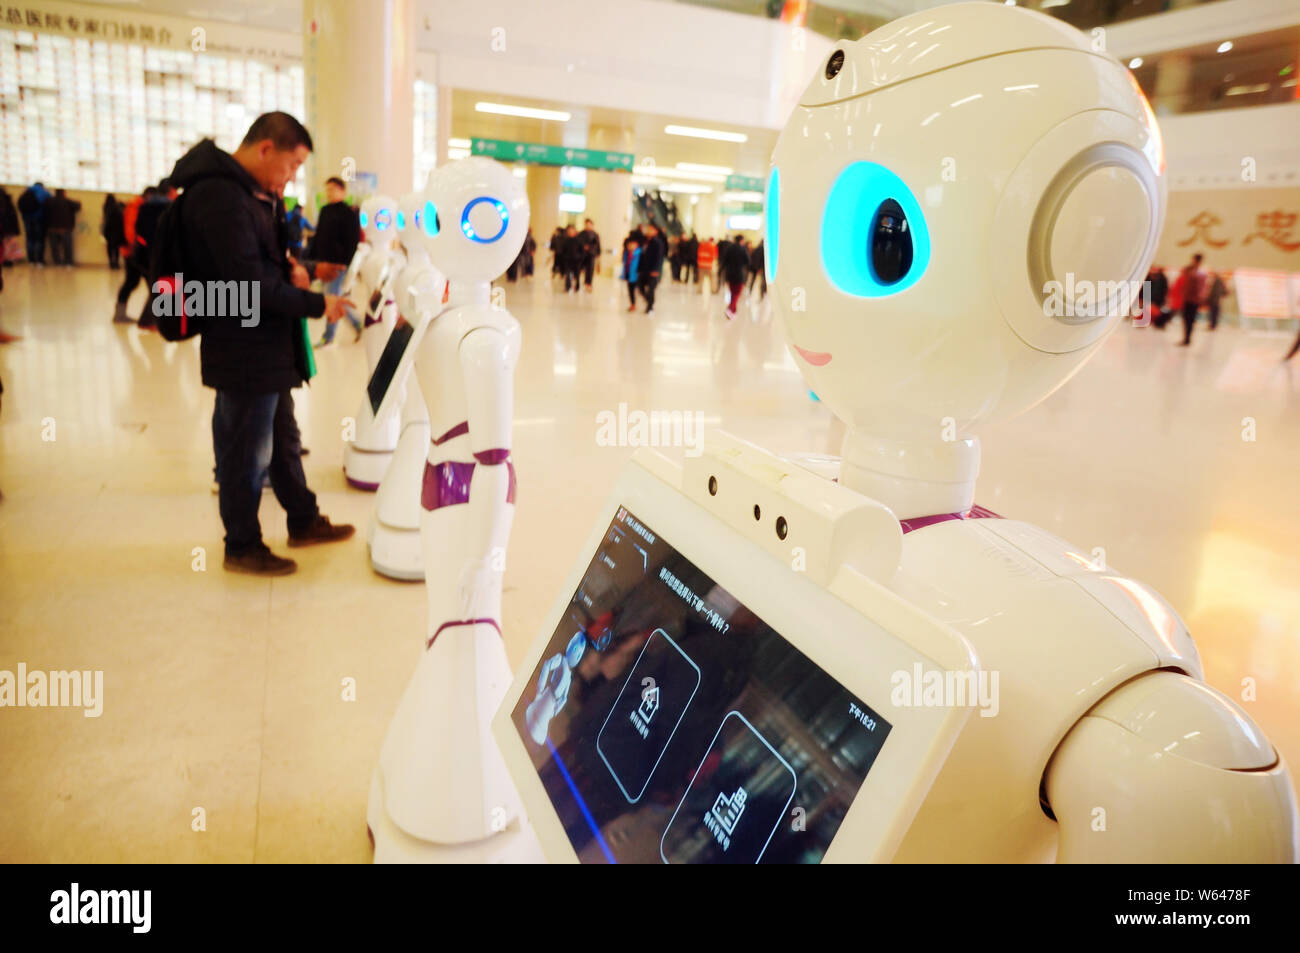 Réceptionnistes Robot servir les patients en consultation externe au hall de l'Hôpital général de PLA chinois à Beijing, Chine, 27 novembre 2017. Banque D'Images